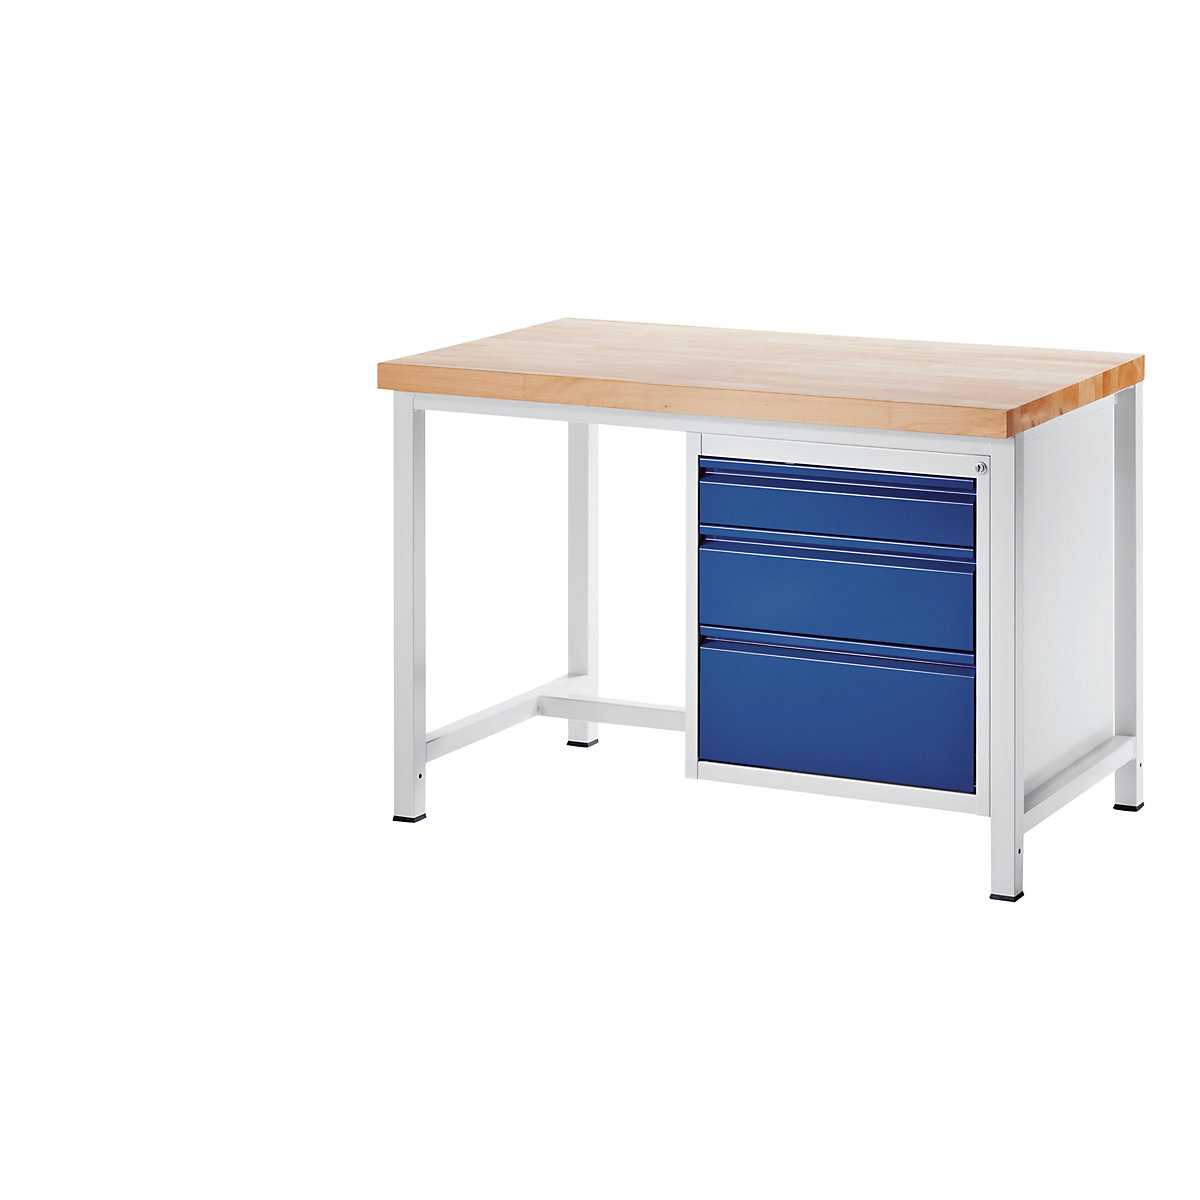 Stół warsztatowy, konstrukcja ramowa – RAU (Zdjęcie produktu 73)-72